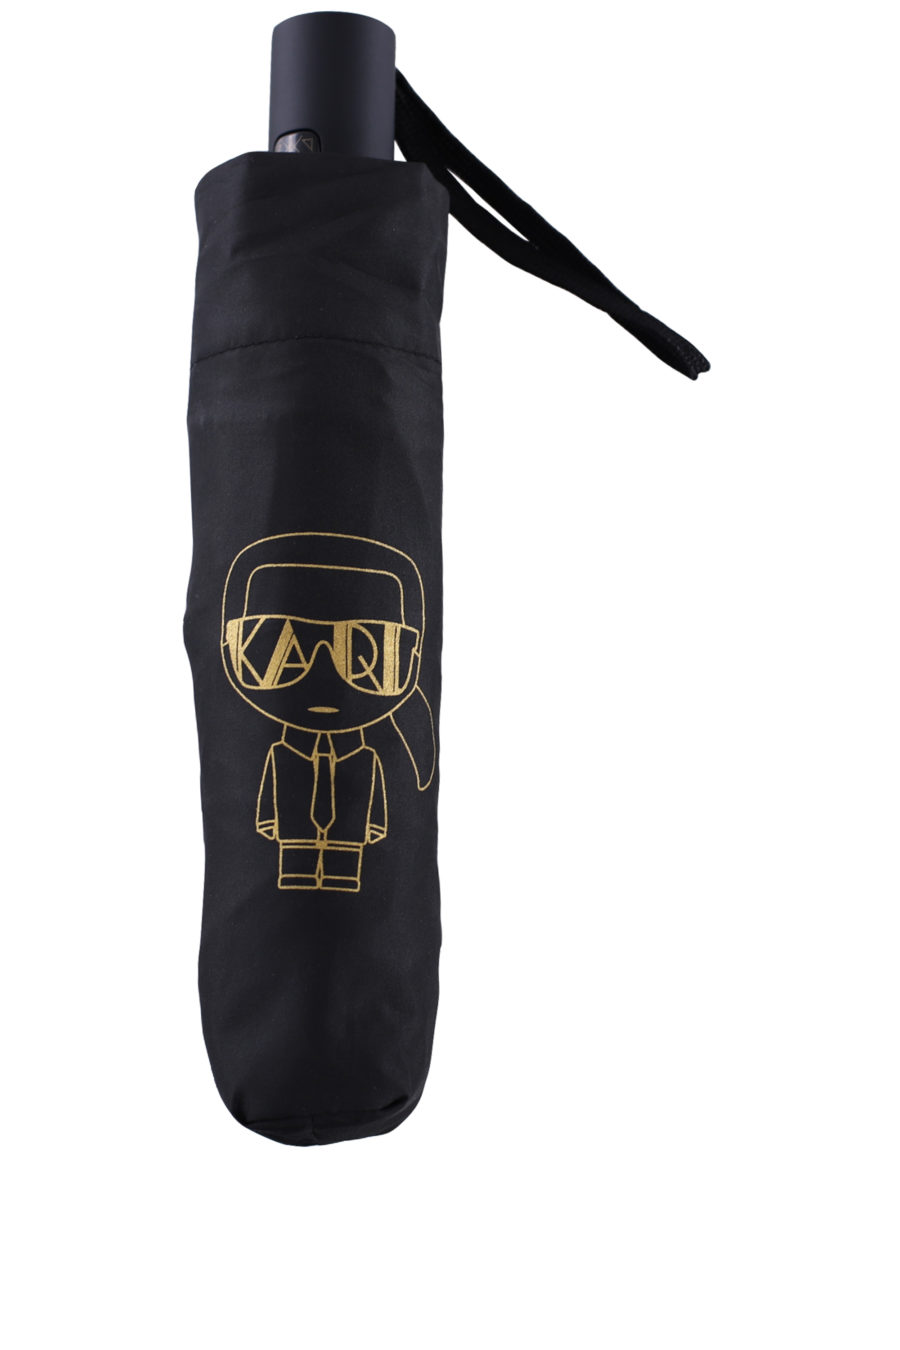 Paraguas color negro con logotipo "Karl" - IMG 0121